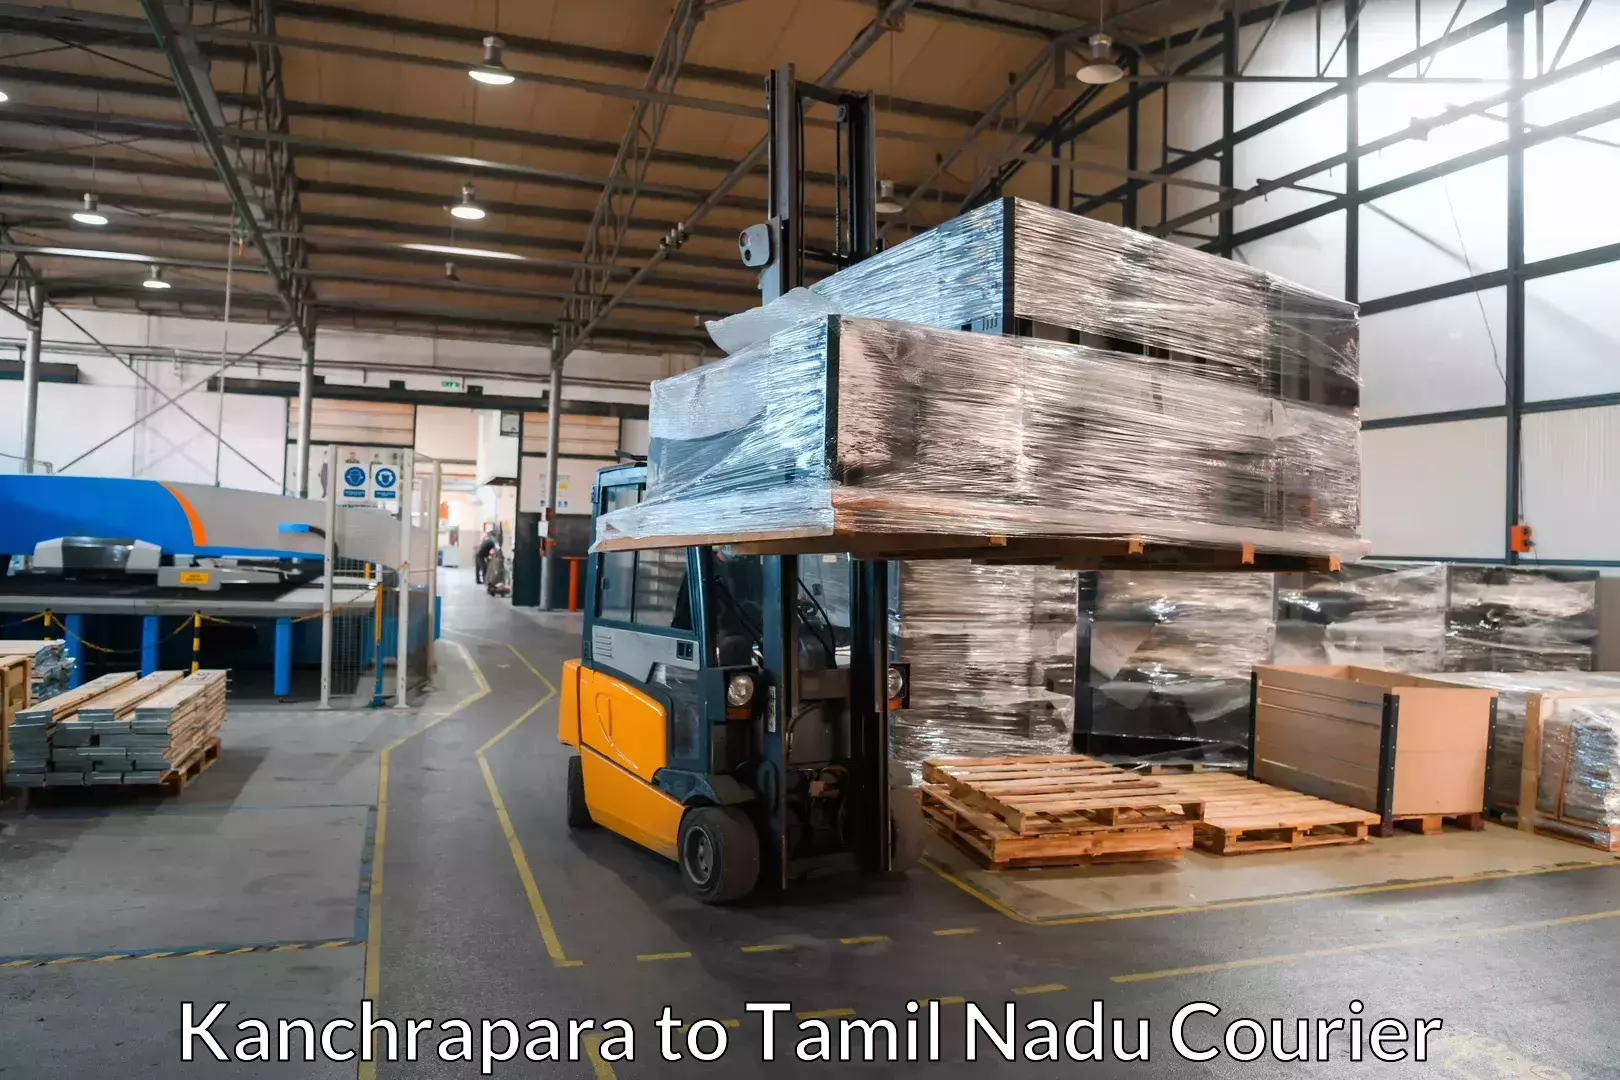 Cost-effective moving options Kanchrapara to Udumalpet